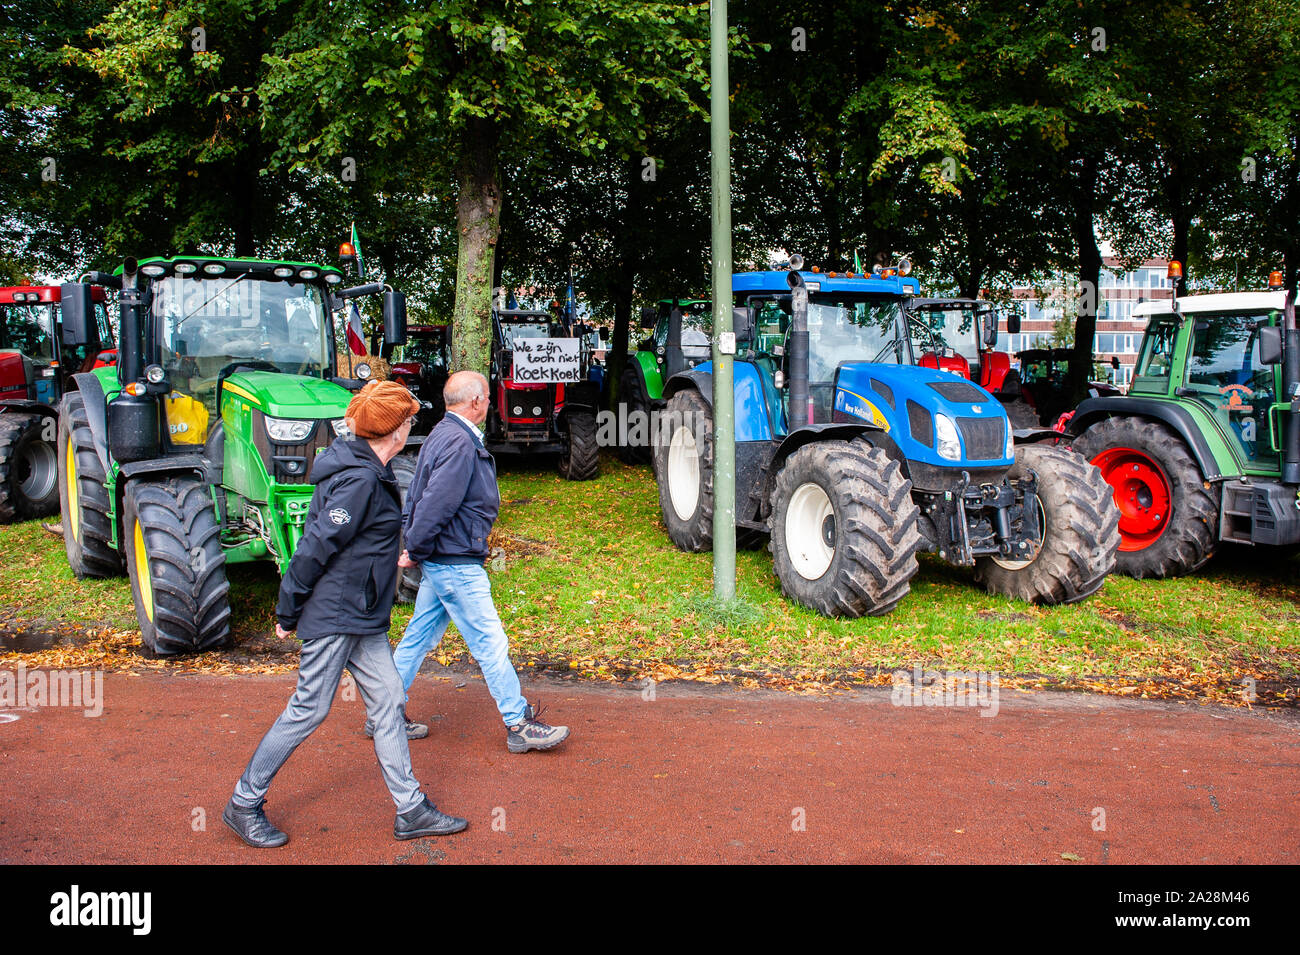 Trattori parcheggiate durante la dimostrazione.Migliaia di agricoltori arrivati alla guida delle loro trattori agricoli a l'AIA per combattere l'immagine spesso negativa degli agricoltori e delle loro aziende ritratte in media da alcuni politici e dagli attivisti. Gli agricoltori venuti da tutte le regioni dei Paesi Bassi a fare una dichiarazione circa la politica attuale in olandese del settore agricolo. Foto Stock